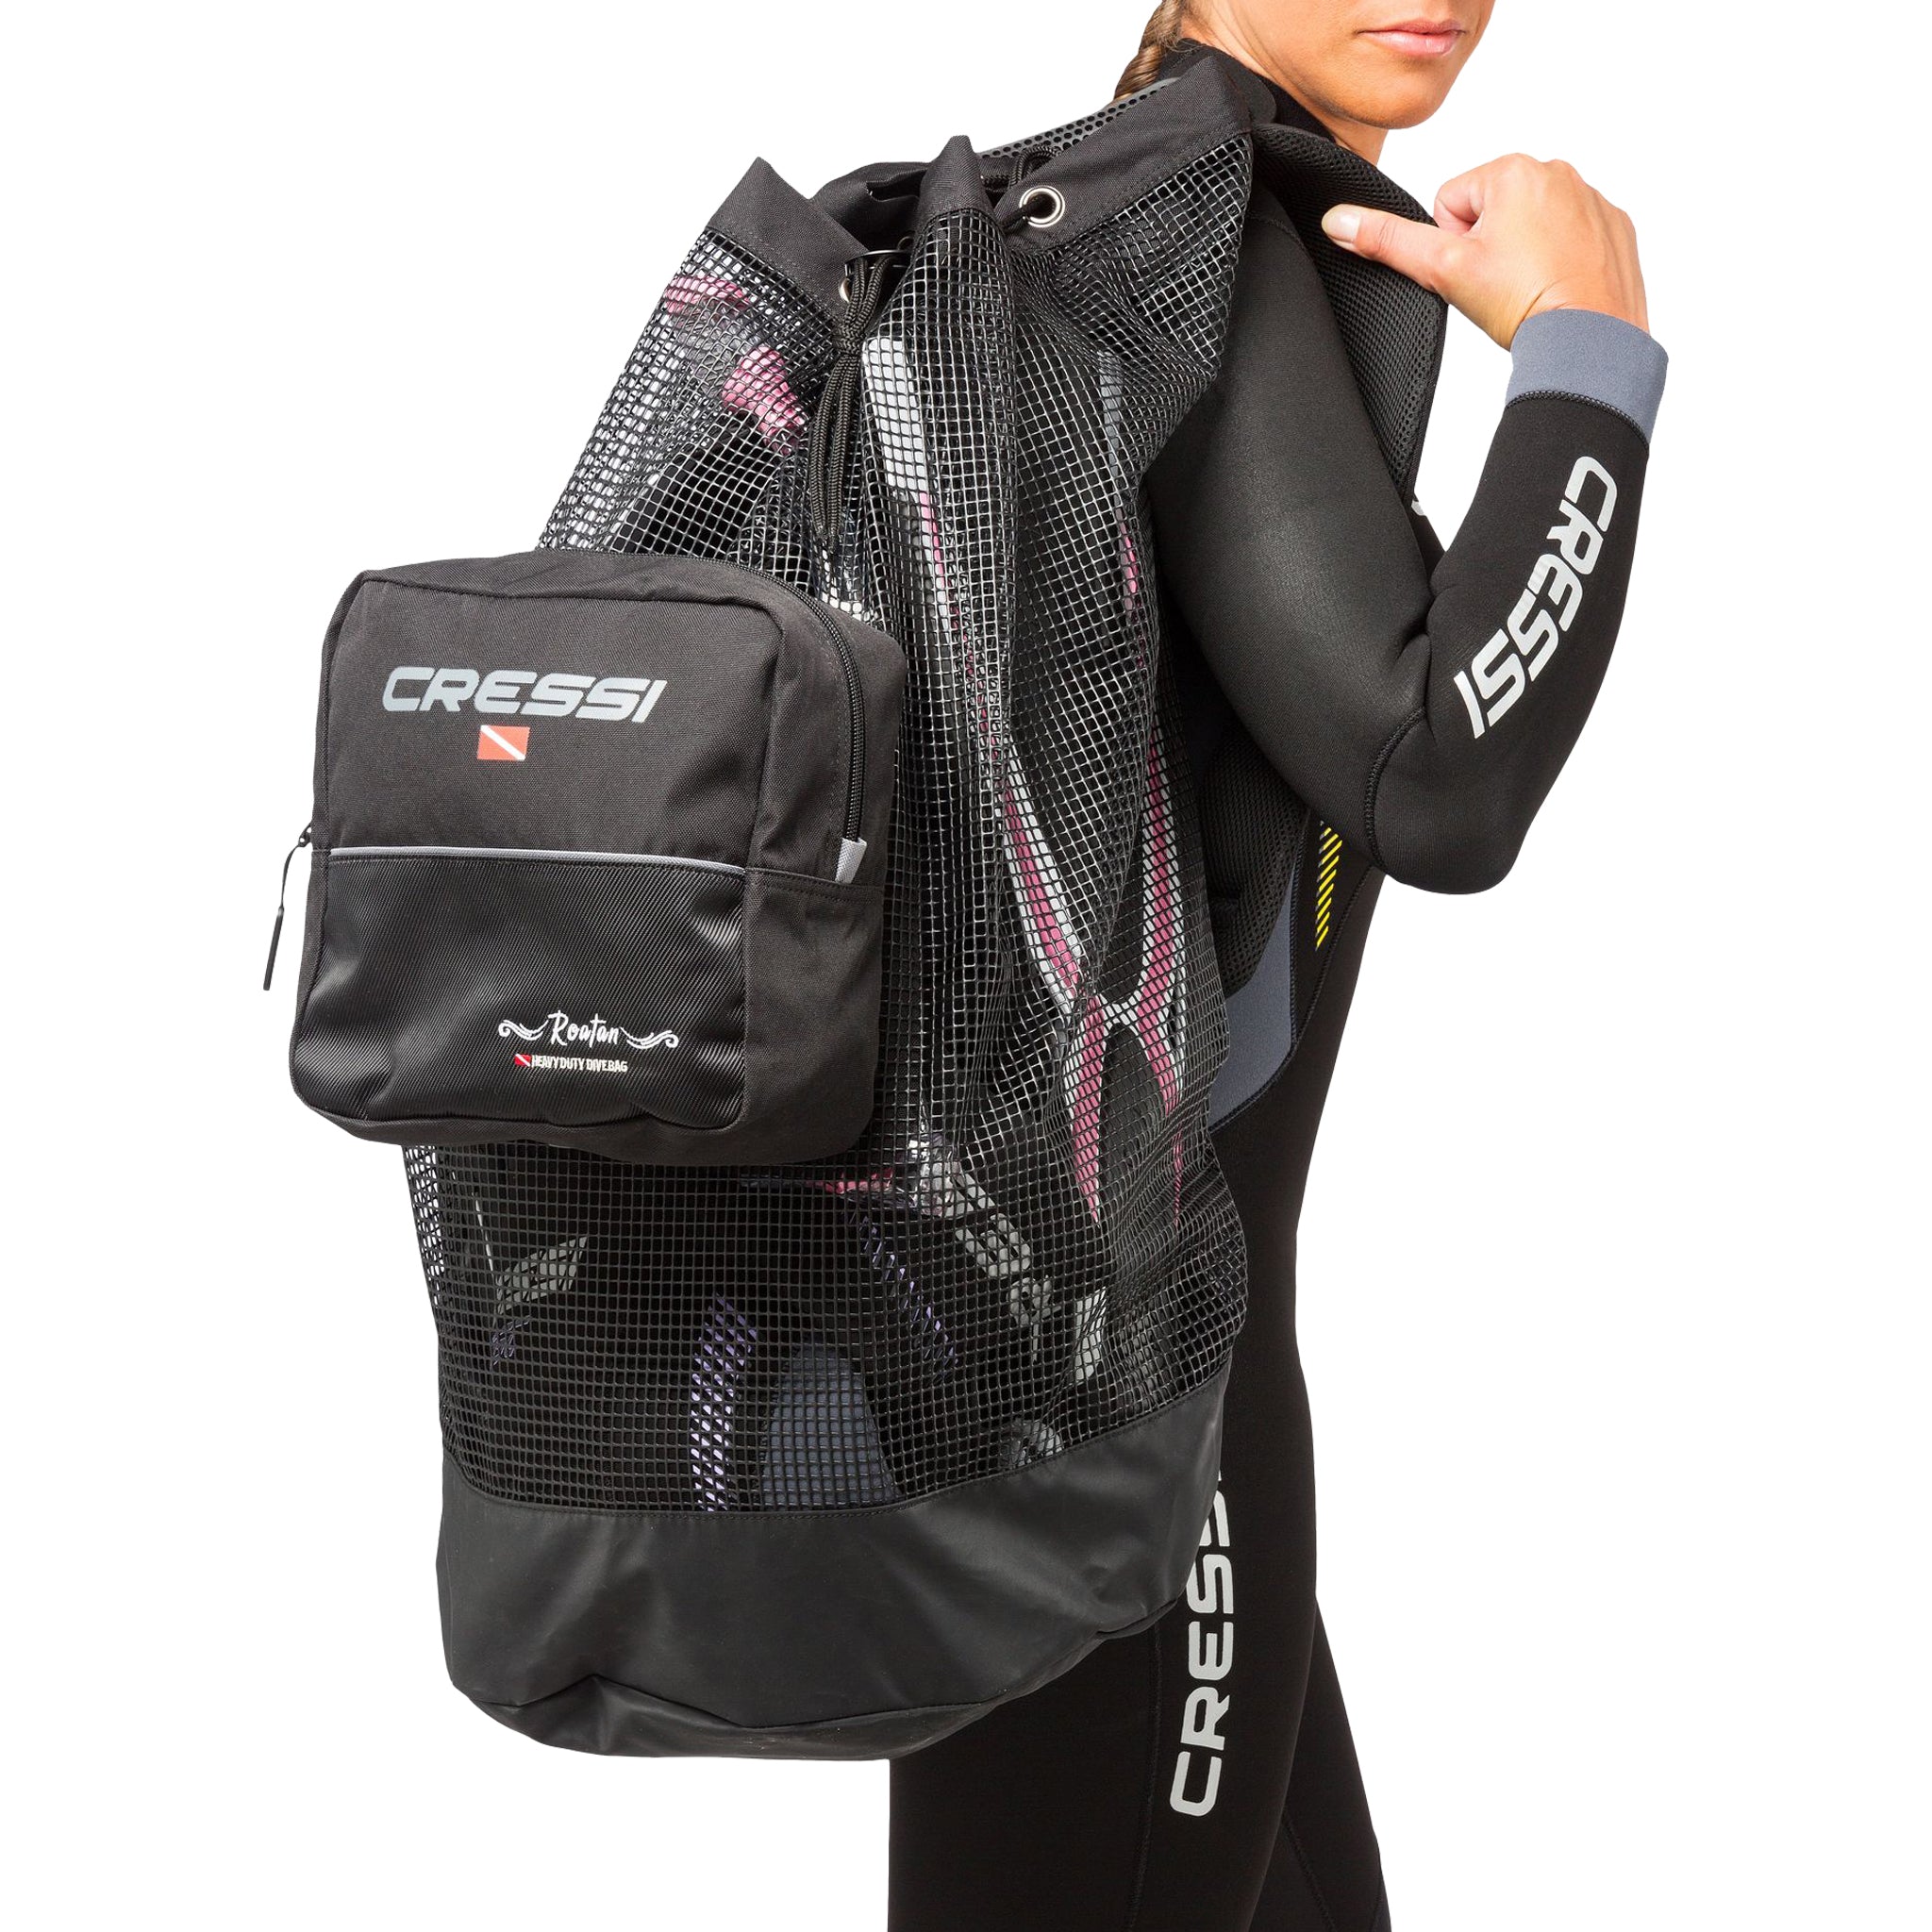 Cressi Roatan Large Capacity Dive Backpack